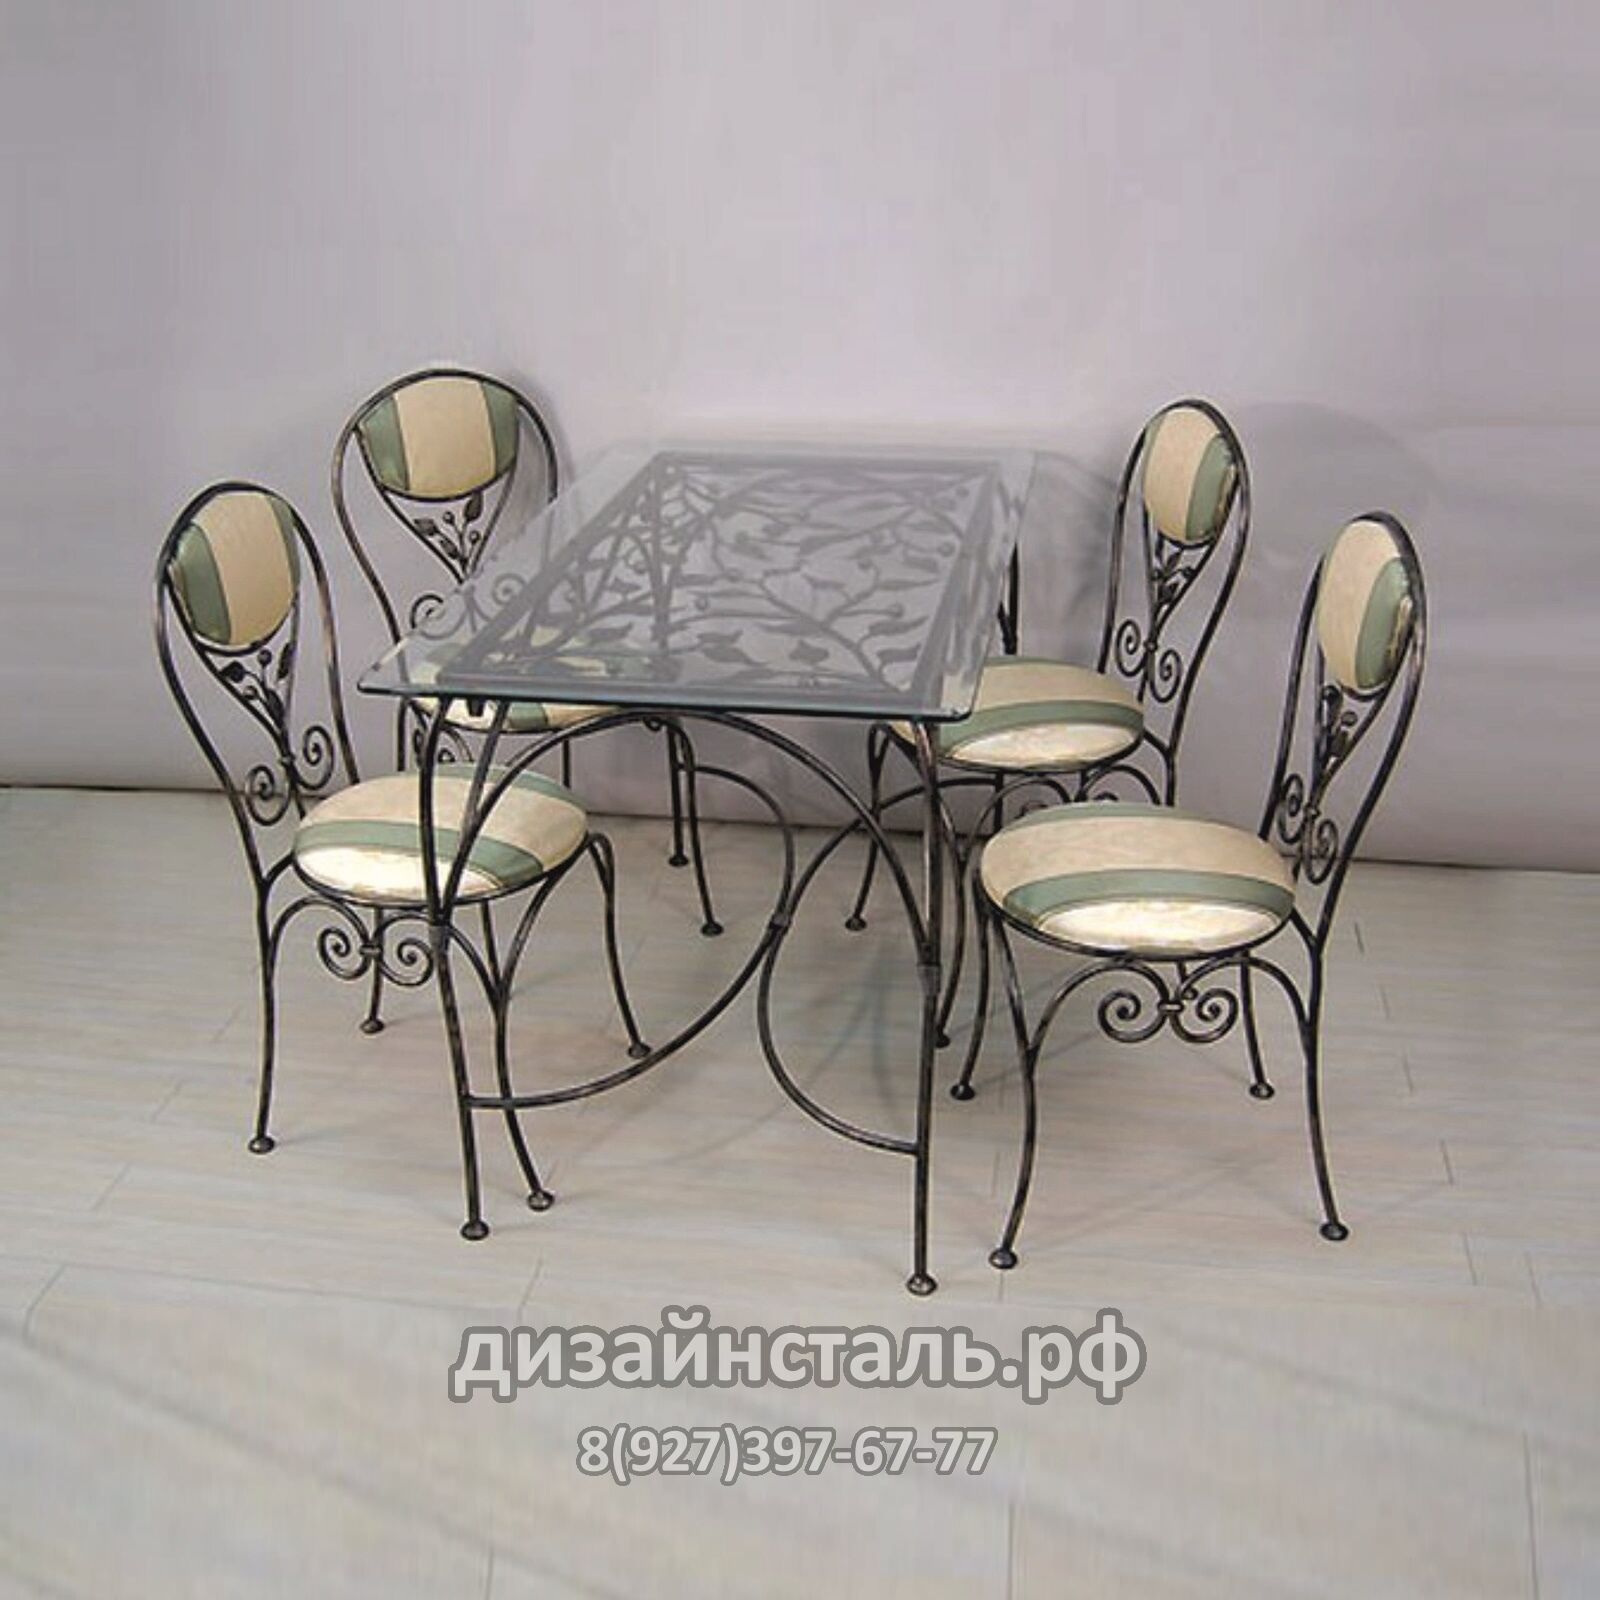 Кухоный стол и стулья Элна